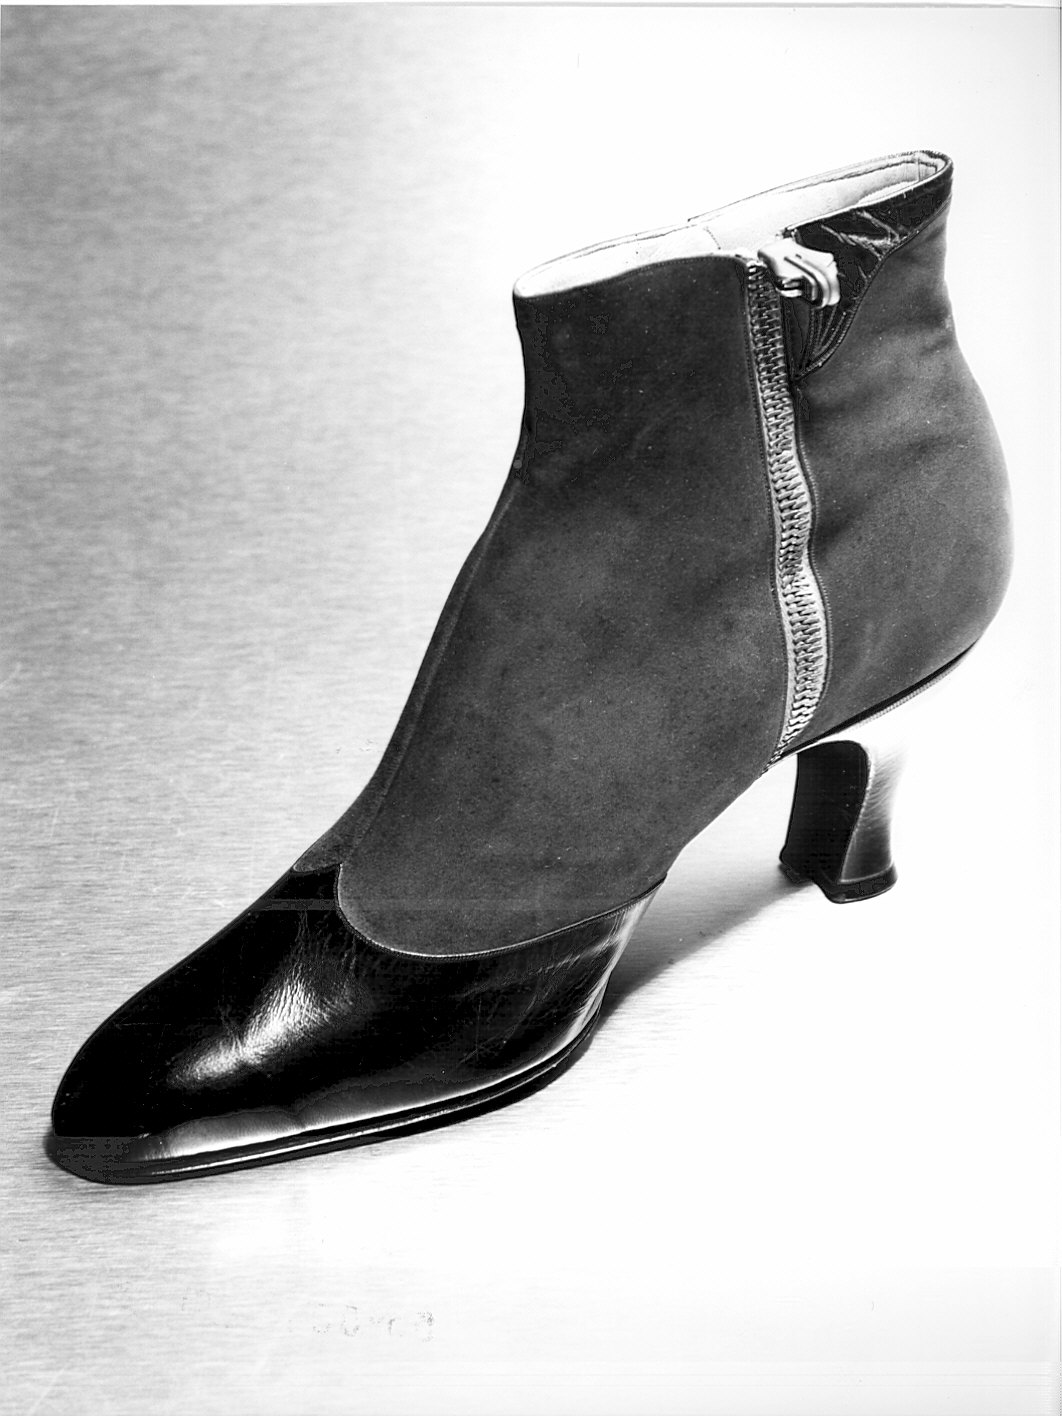 Non rilevato (scarpa) - manifattura (1950)